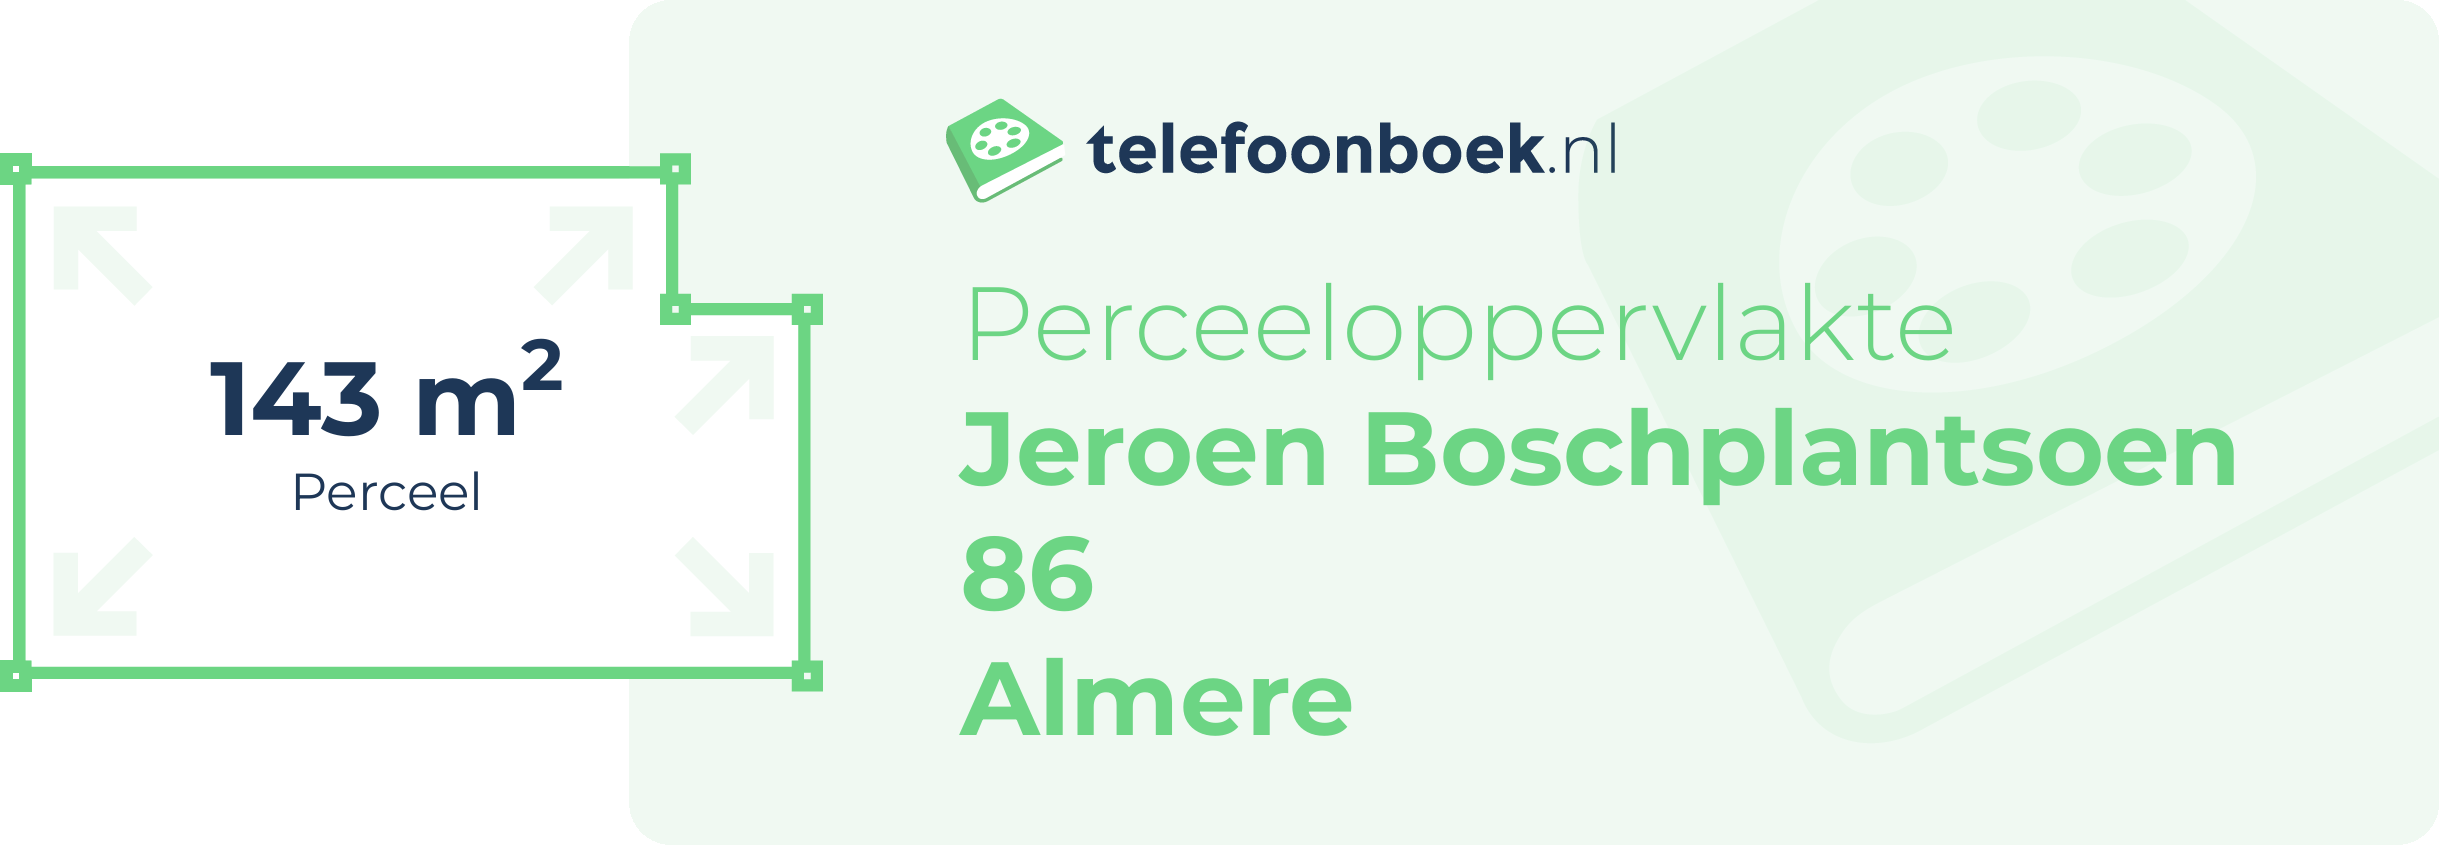 Perceeloppervlakte Jeroen Boschplantsoen 86 Almere